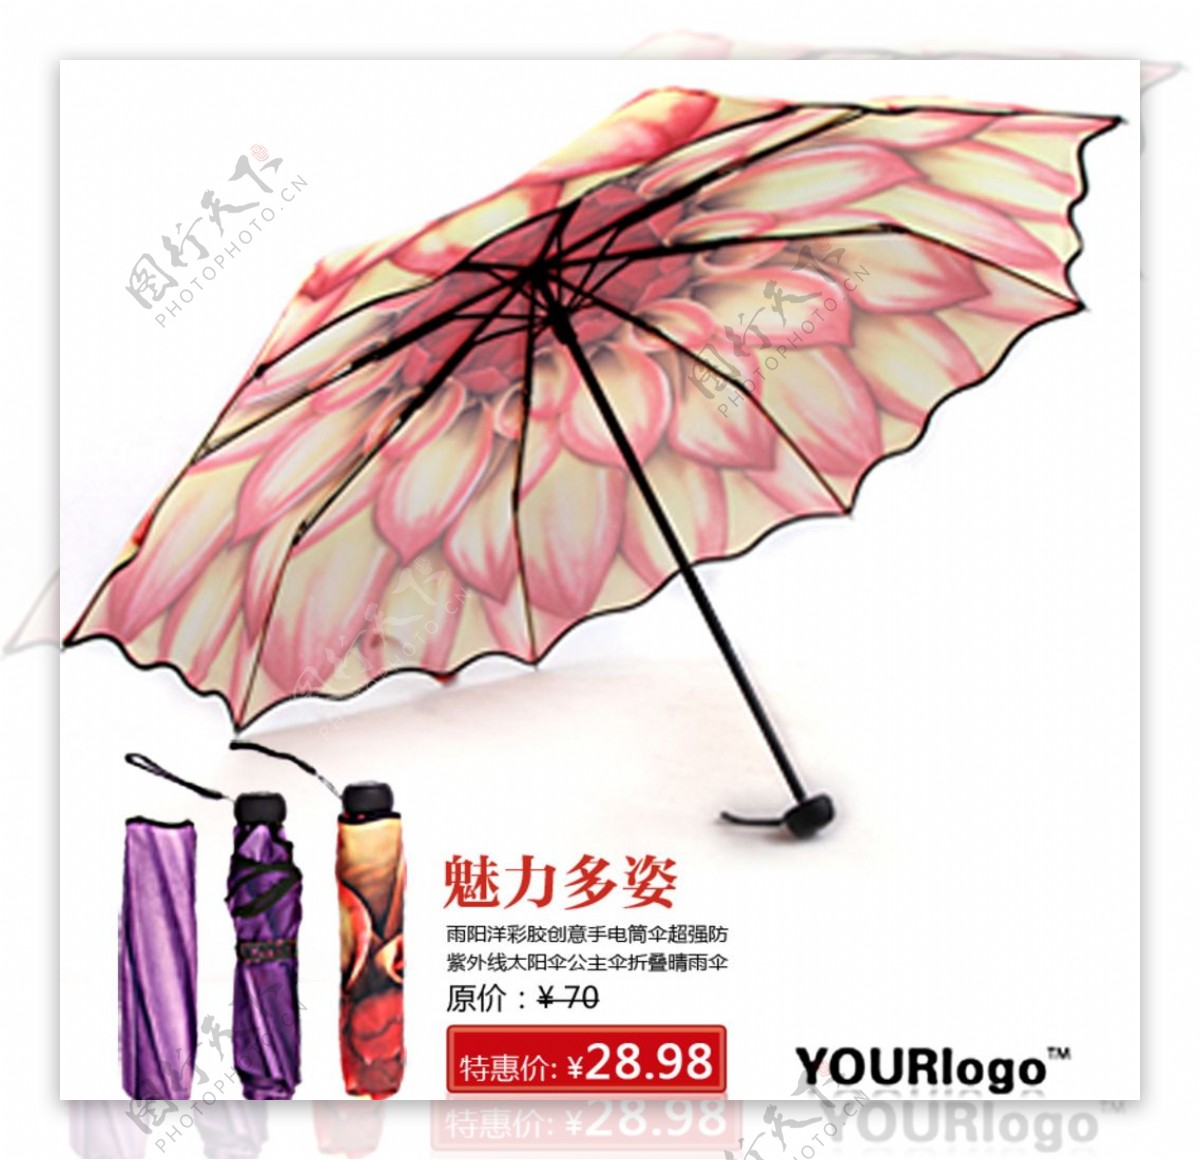 雨伞展示促销活动